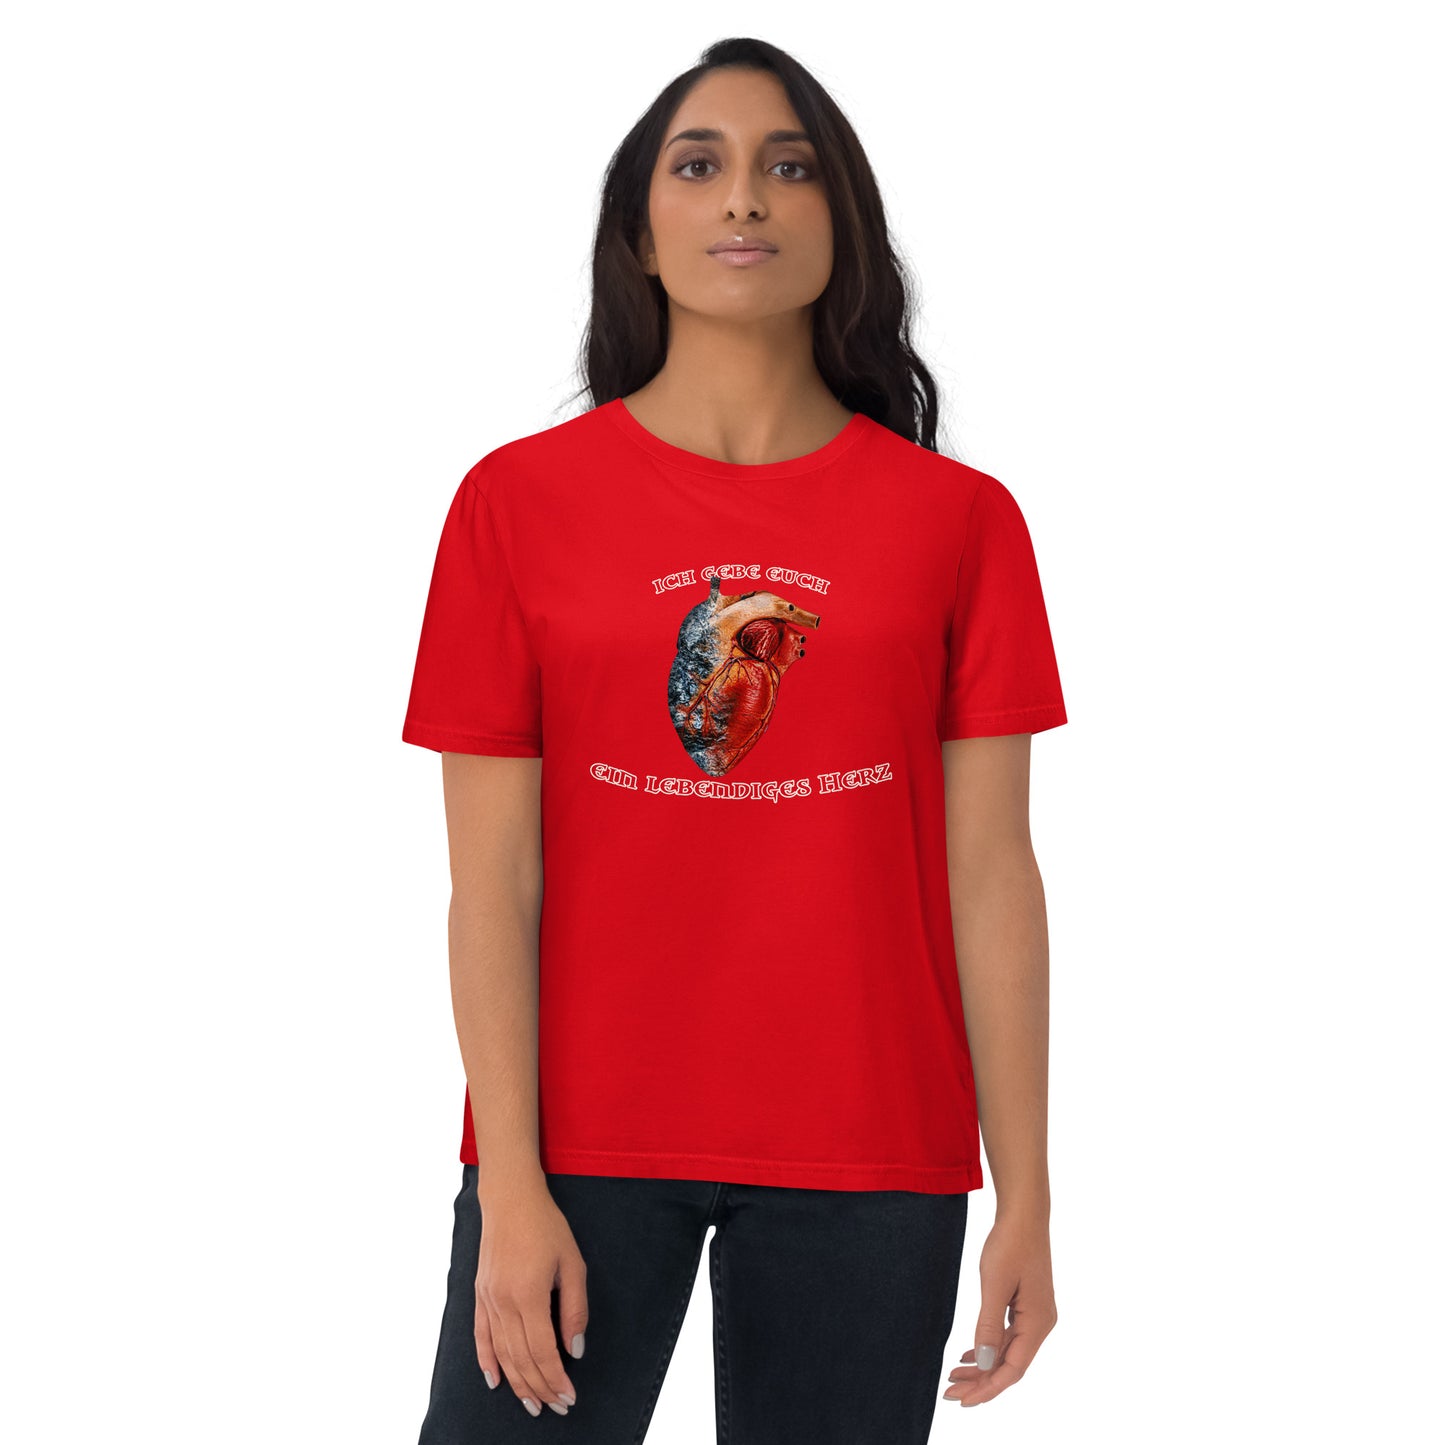 Ein lebendiges Herz - T-Shirt - Unisex